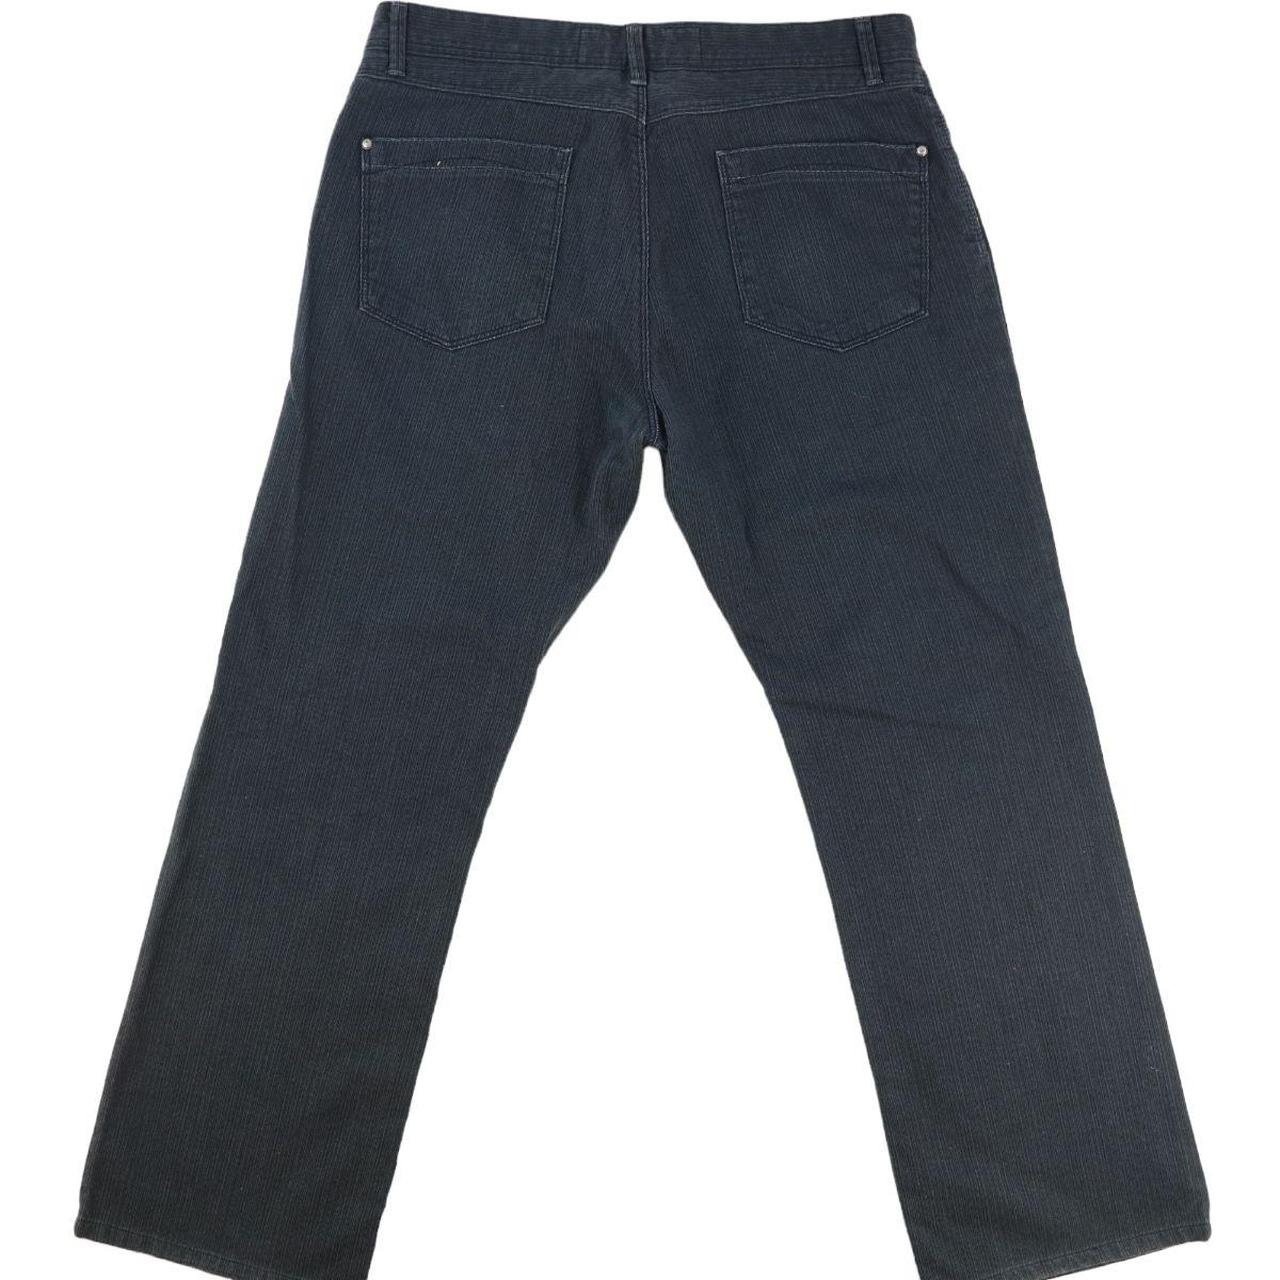 Jeans Trousers Vintage Denim Pants Carpenter... - Depop